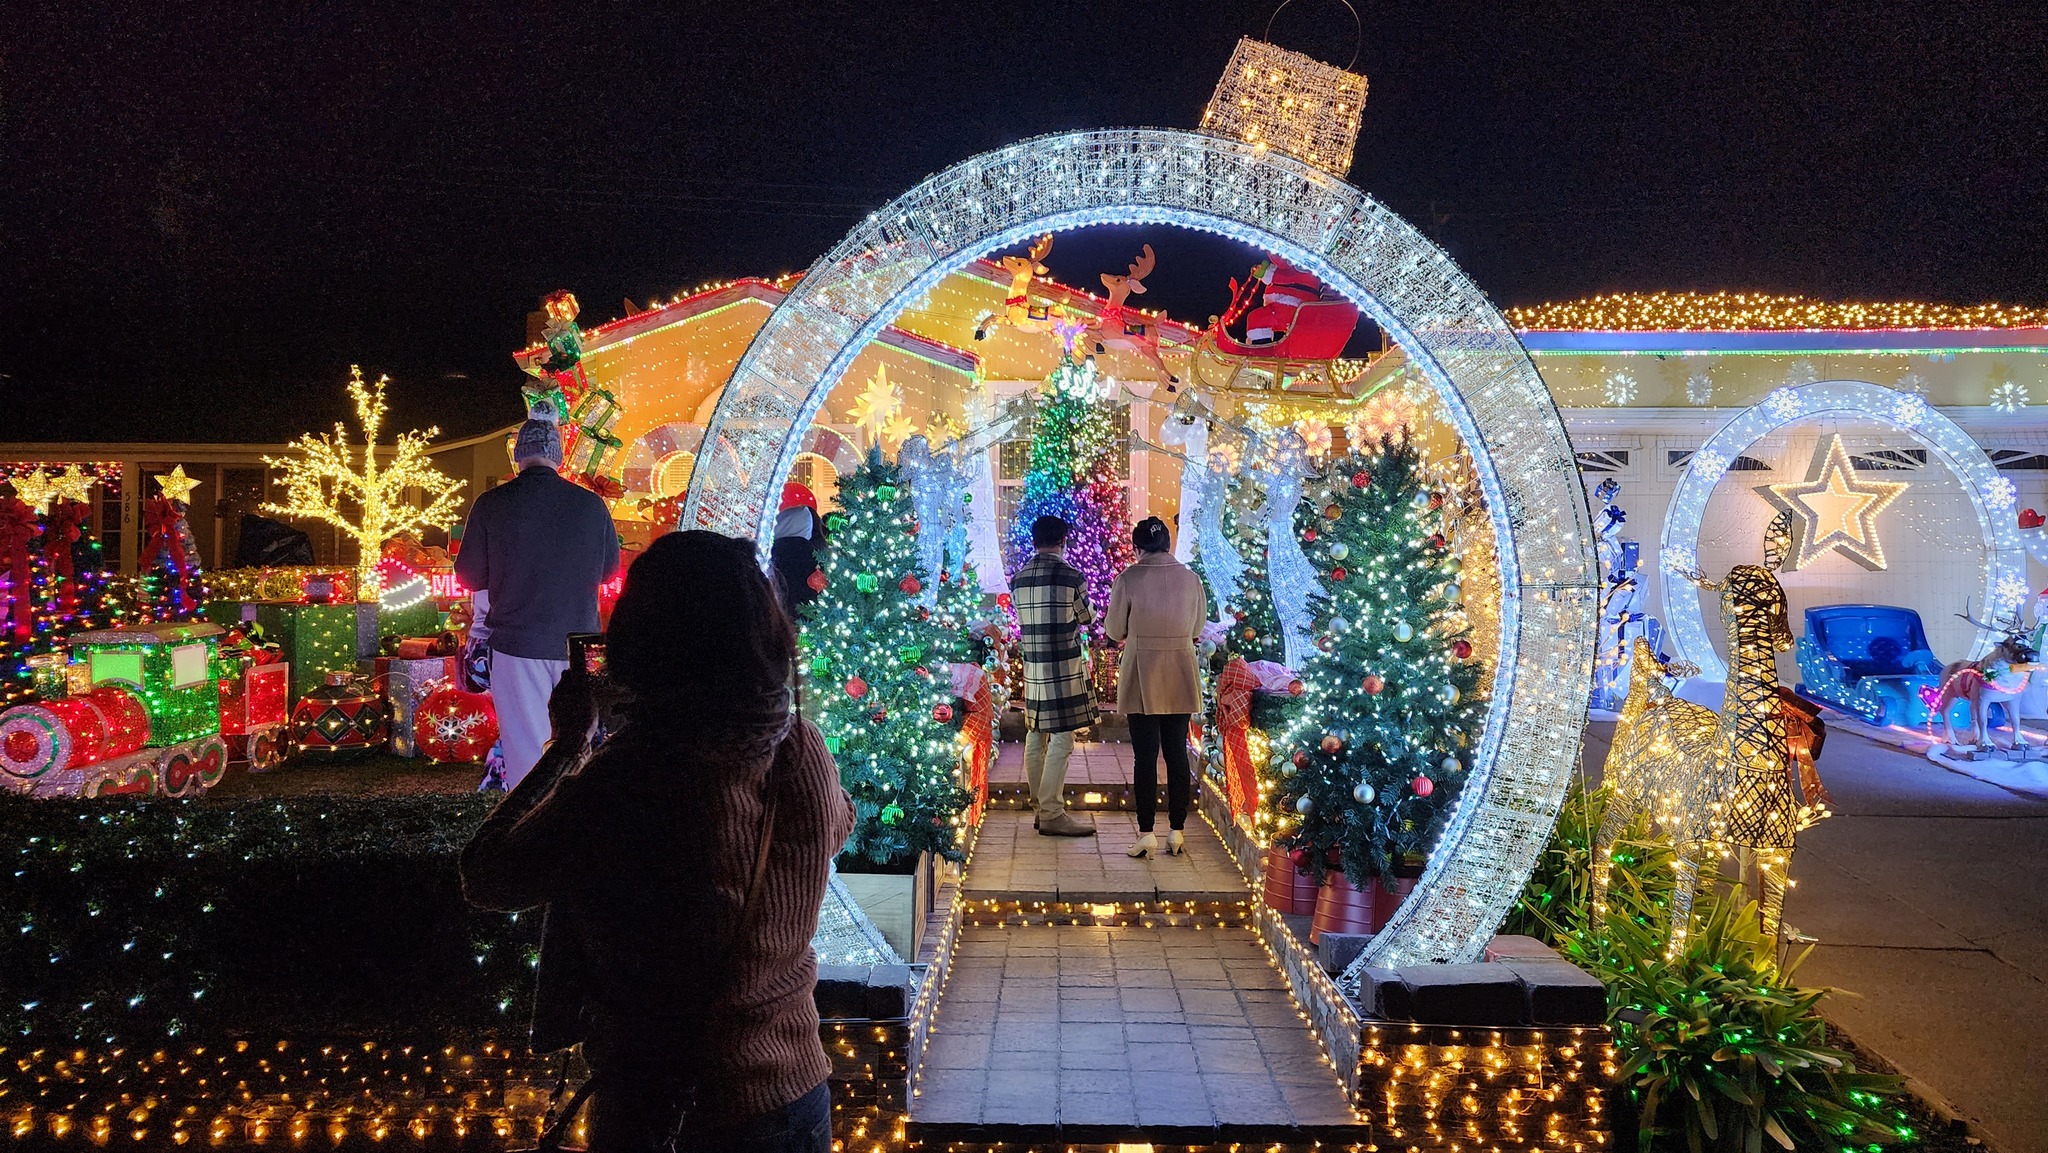 Ngôi nhà trang trí Noel đẹp như Thiên đường ở San Jose - 4